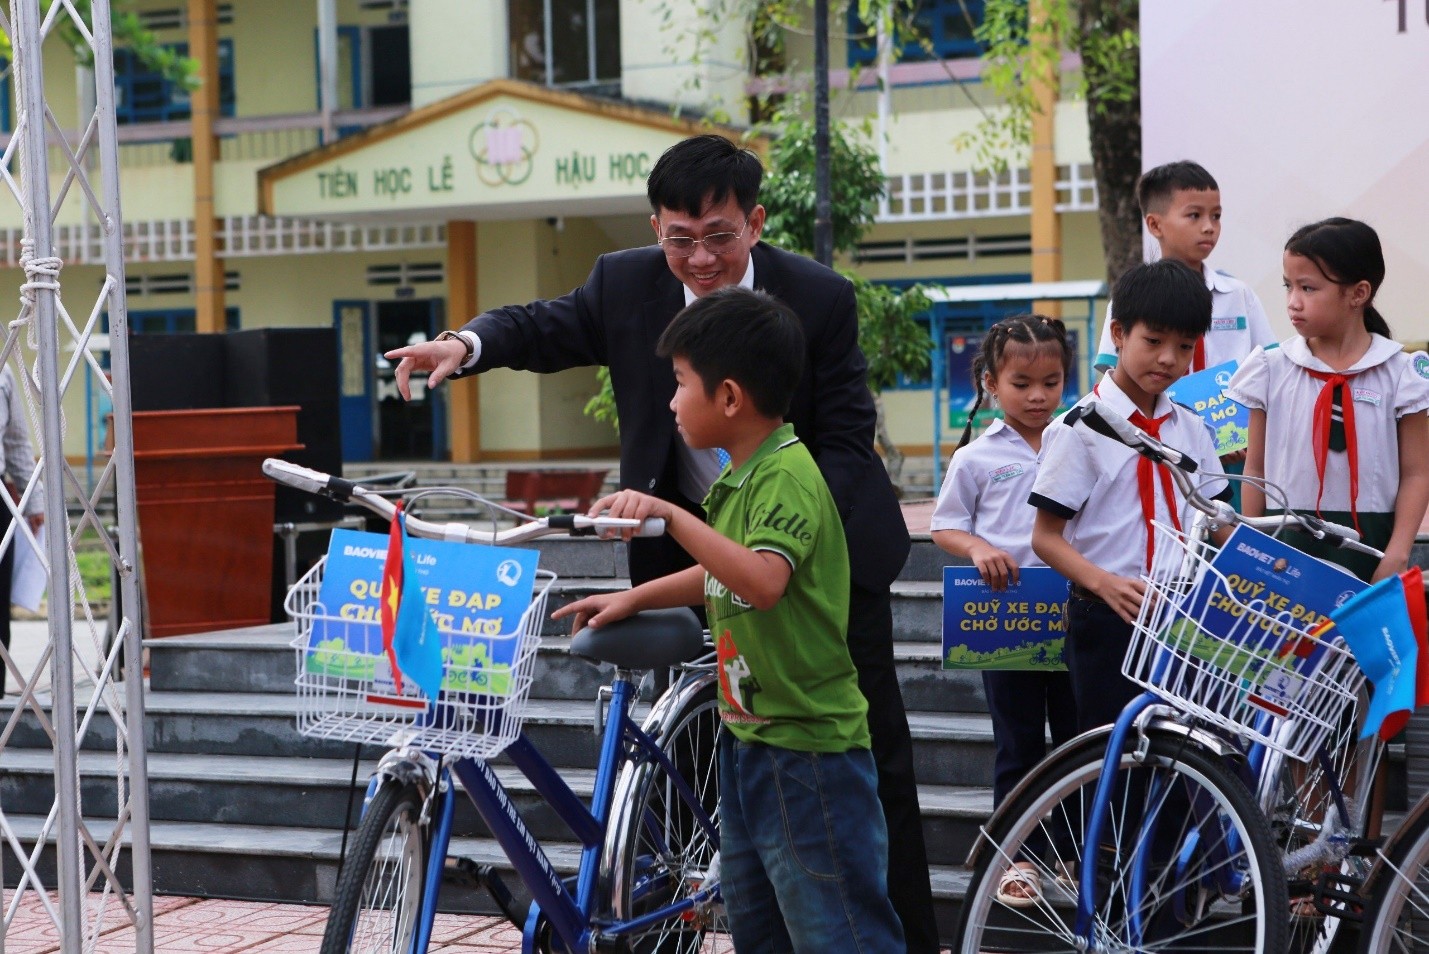 Chương trình “Đưa trường học đến thí sinh” do Báo Người Lao Động tổ chức với sự tham gia của hơn 1.500 học sinh  tại huyện Tiên Phước, tỉnh Quảng Nam